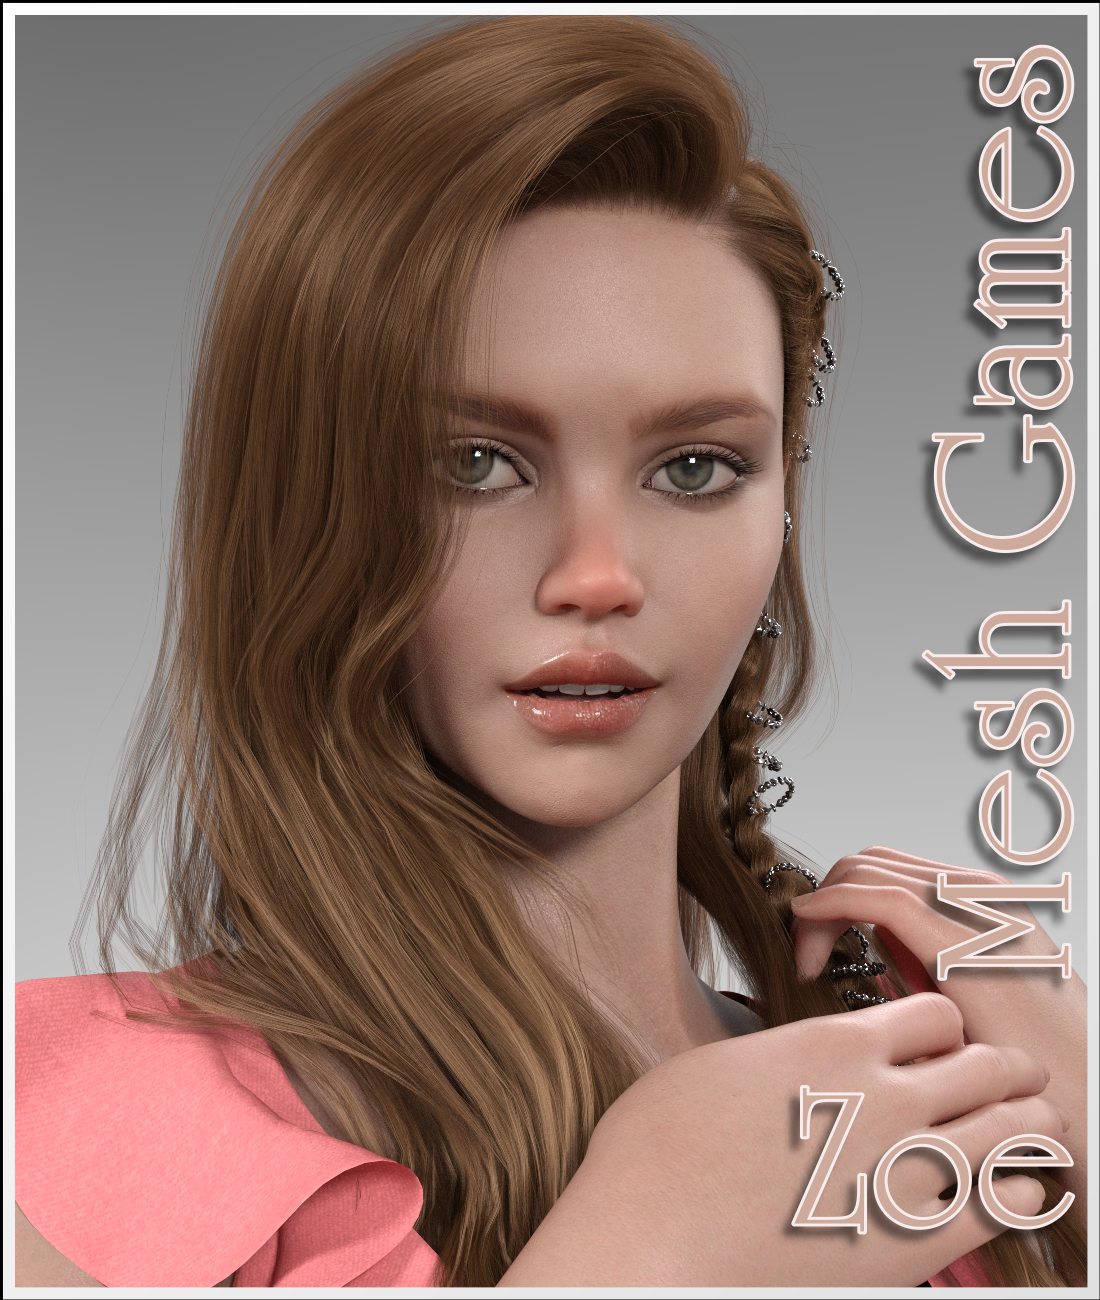 Meshgames - Zoe G8F Morph by: LUNA3D, 3D Models by Daz 3D